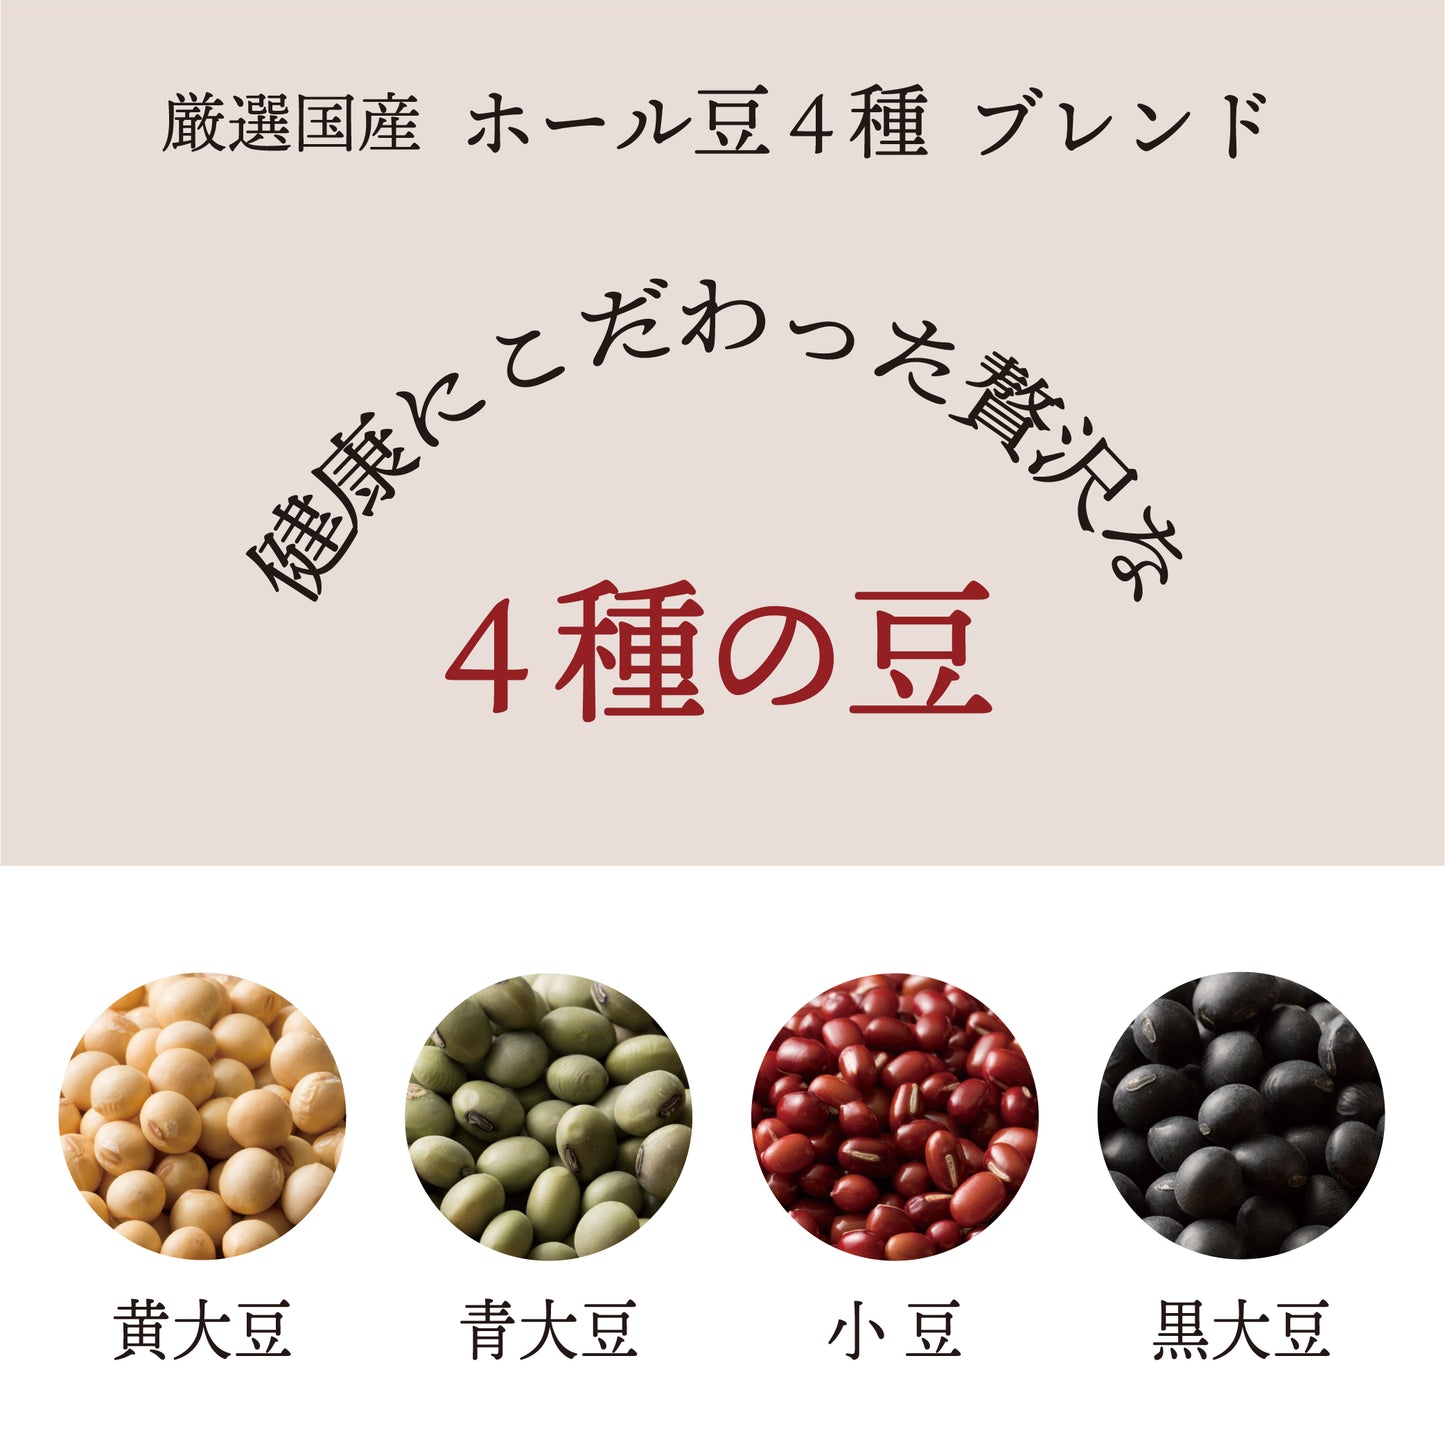 雑穀 雑穀米 国産 ホール豆４種ブレンド (大豆/黒大豆/青大豆/小豆) 900g(450g×2袋)